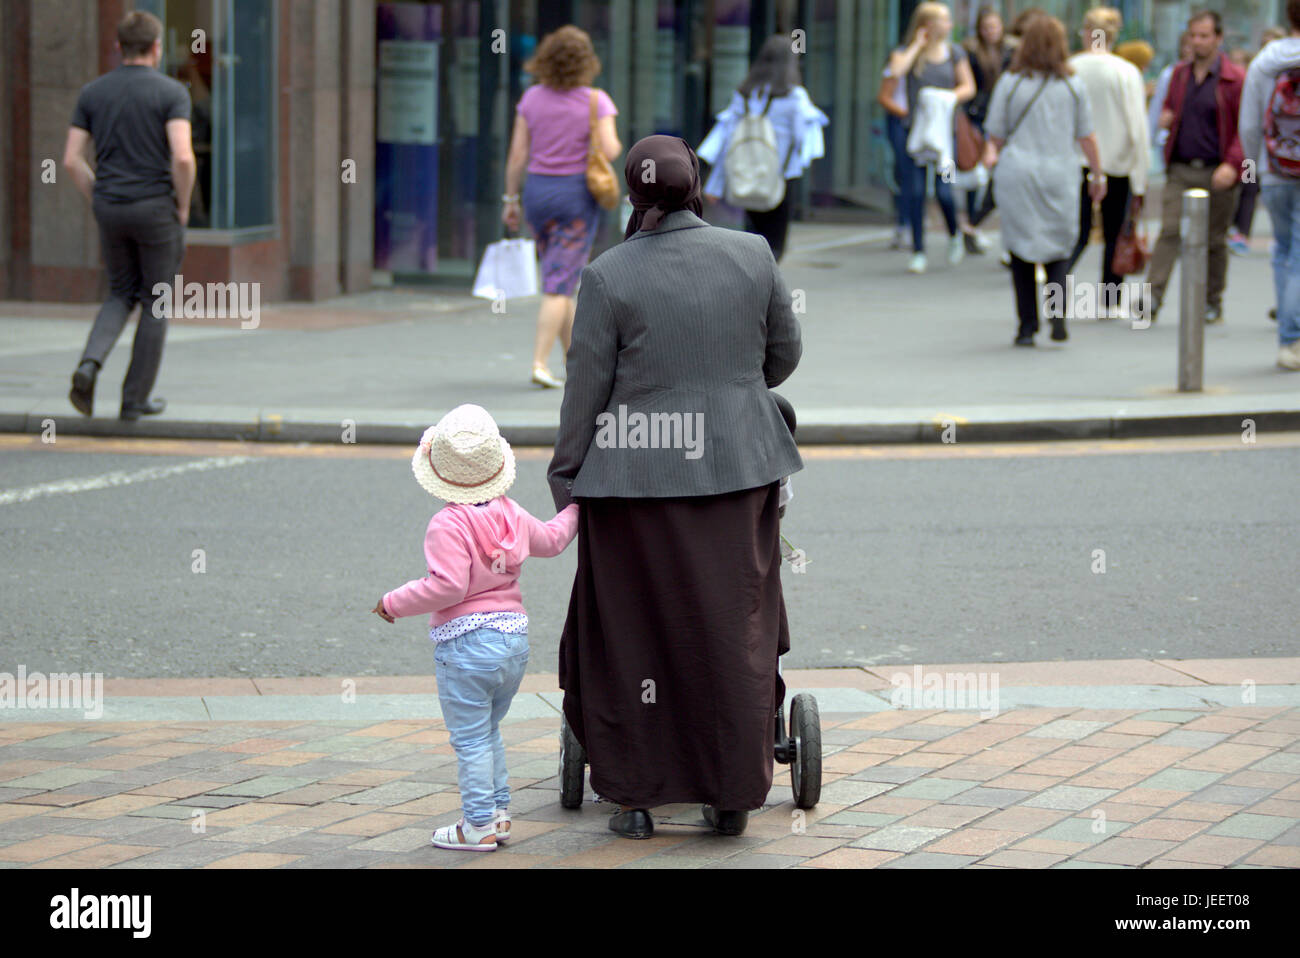 Asiatische Familie Flüchtling gekleidet Hijab Schal auf Straße im UK alltägliche Szene Mutter und Kind Stroh Hut Stockfoto